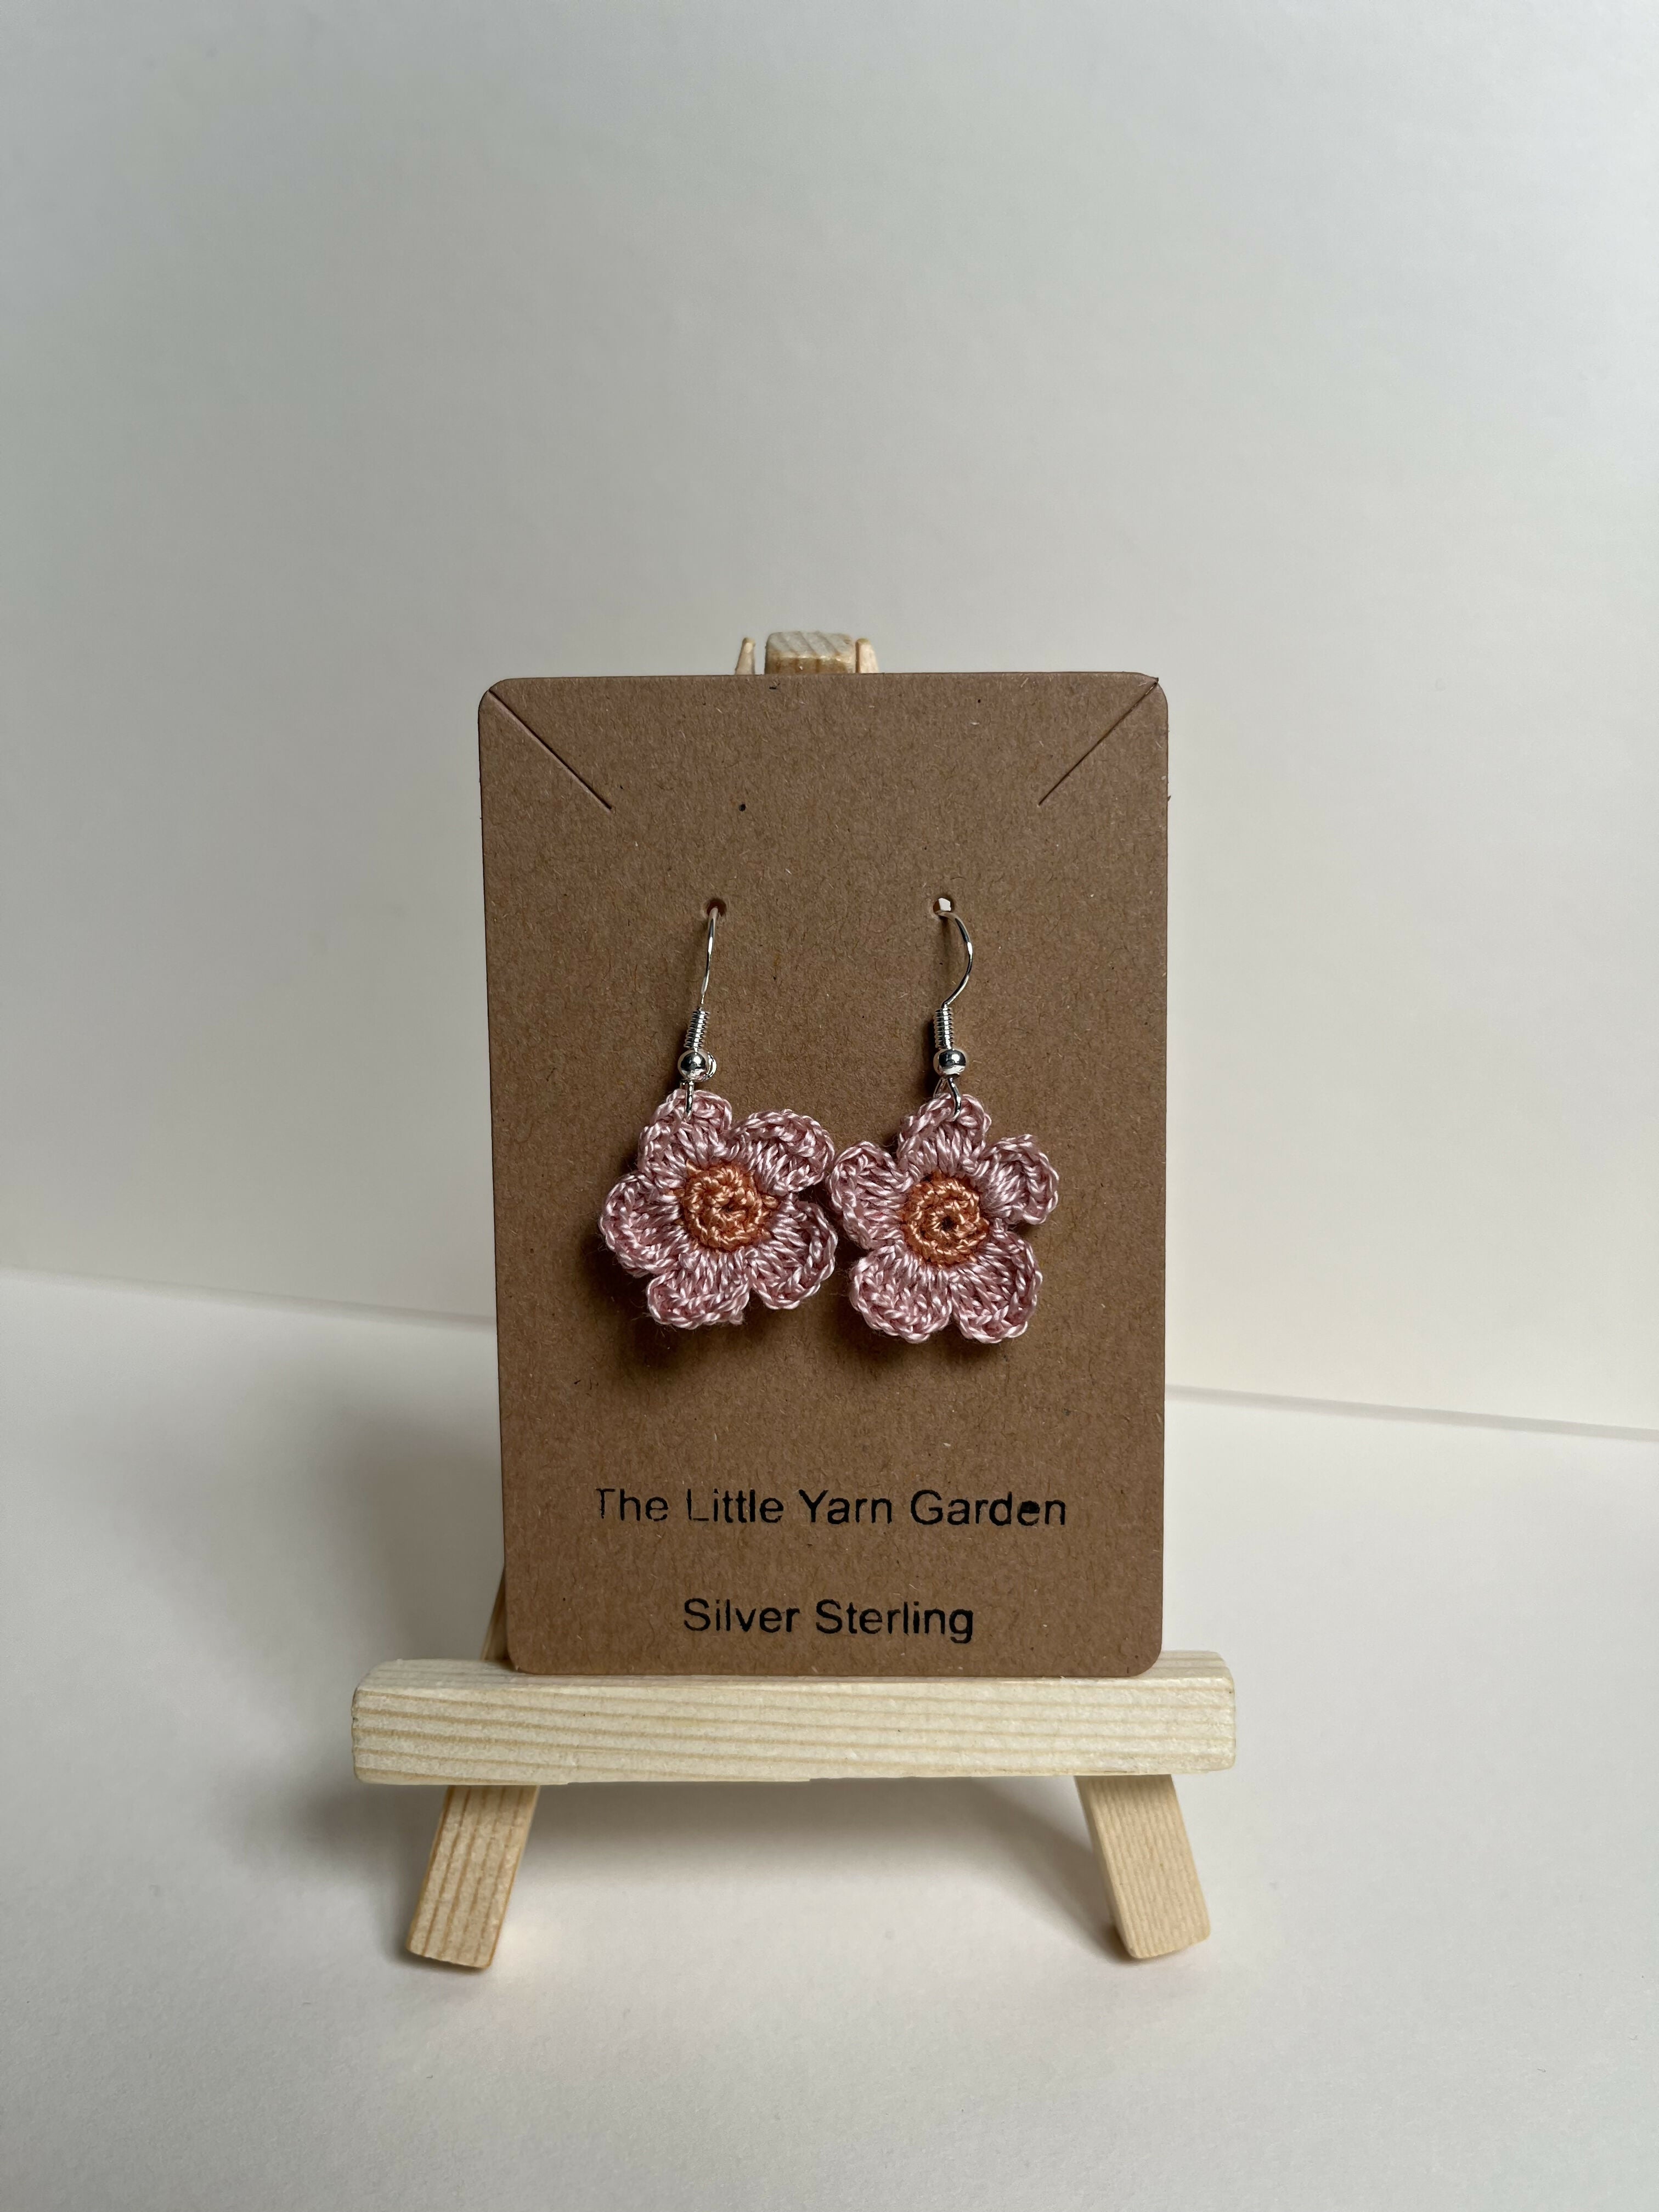 Crochet Flower Earrings